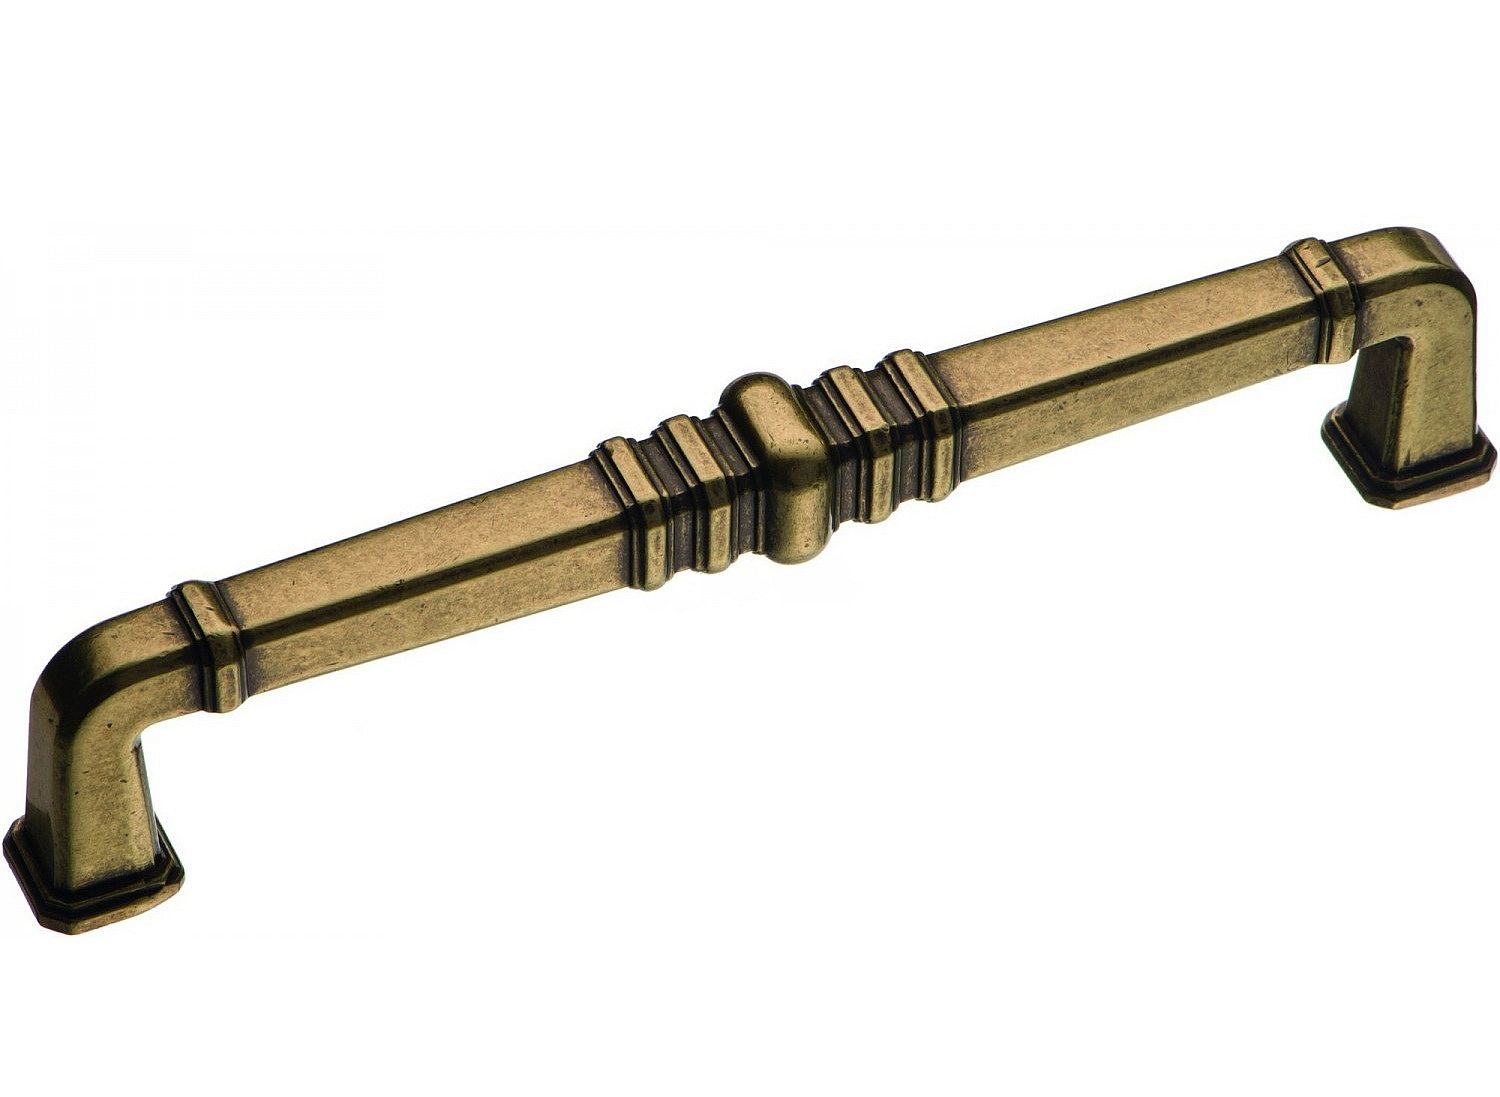 Ручка мебельная скоба 160мм бронза античная KT 012.160.12 Brass / 69316 / оптом и в розницу / мебельная фурнитура "ЛАВР"